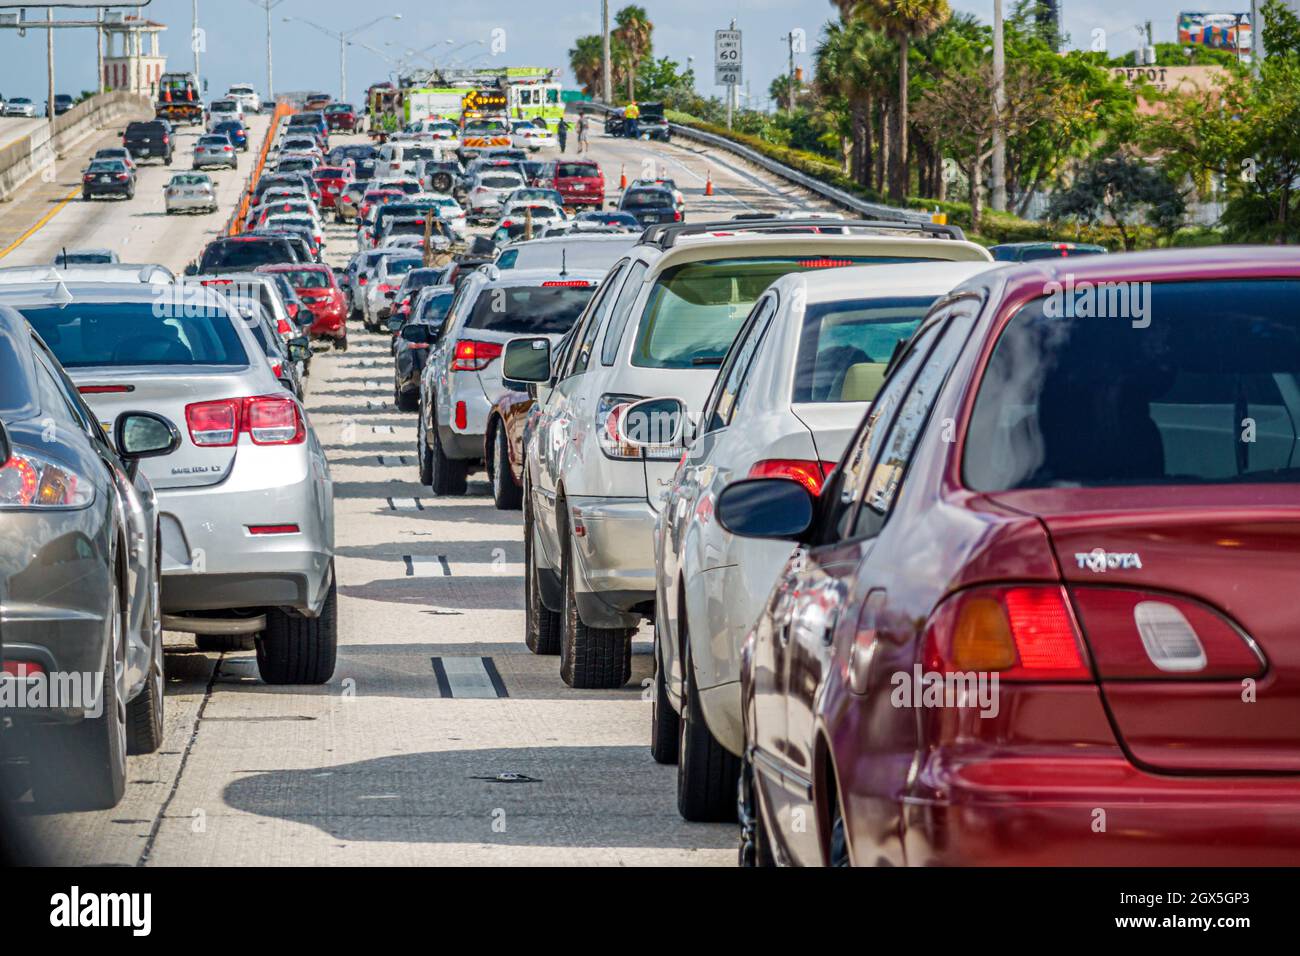 Miami Florida, Interstate I-95, autoroute, la circulation a arrêté lent bourrage voies fermées accidents voitures automobiles véhicules Banque D'Images